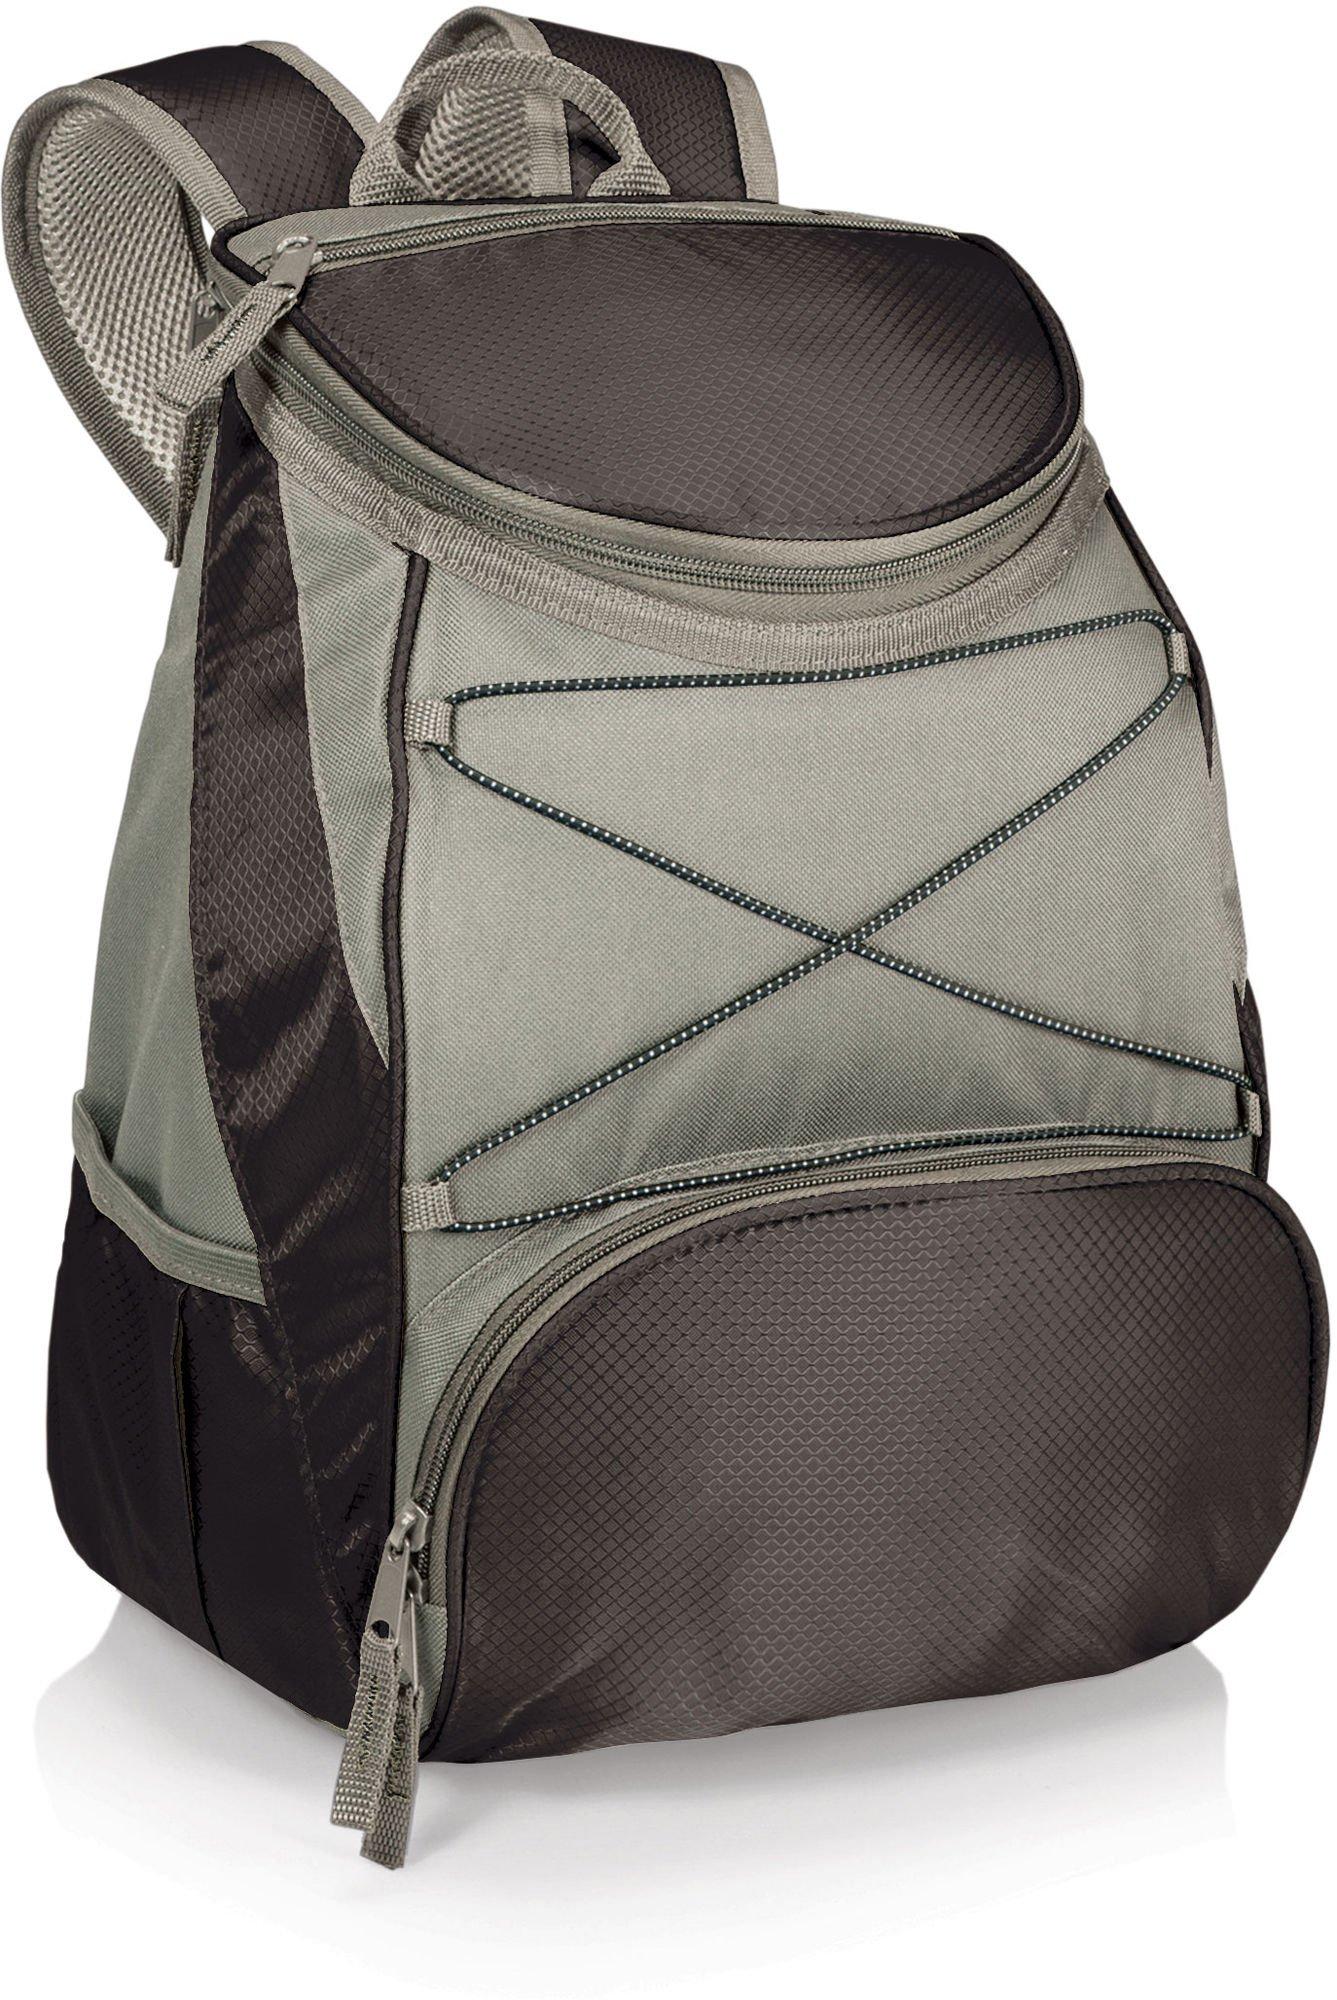 Oniva PTX Black Insulated Backpack